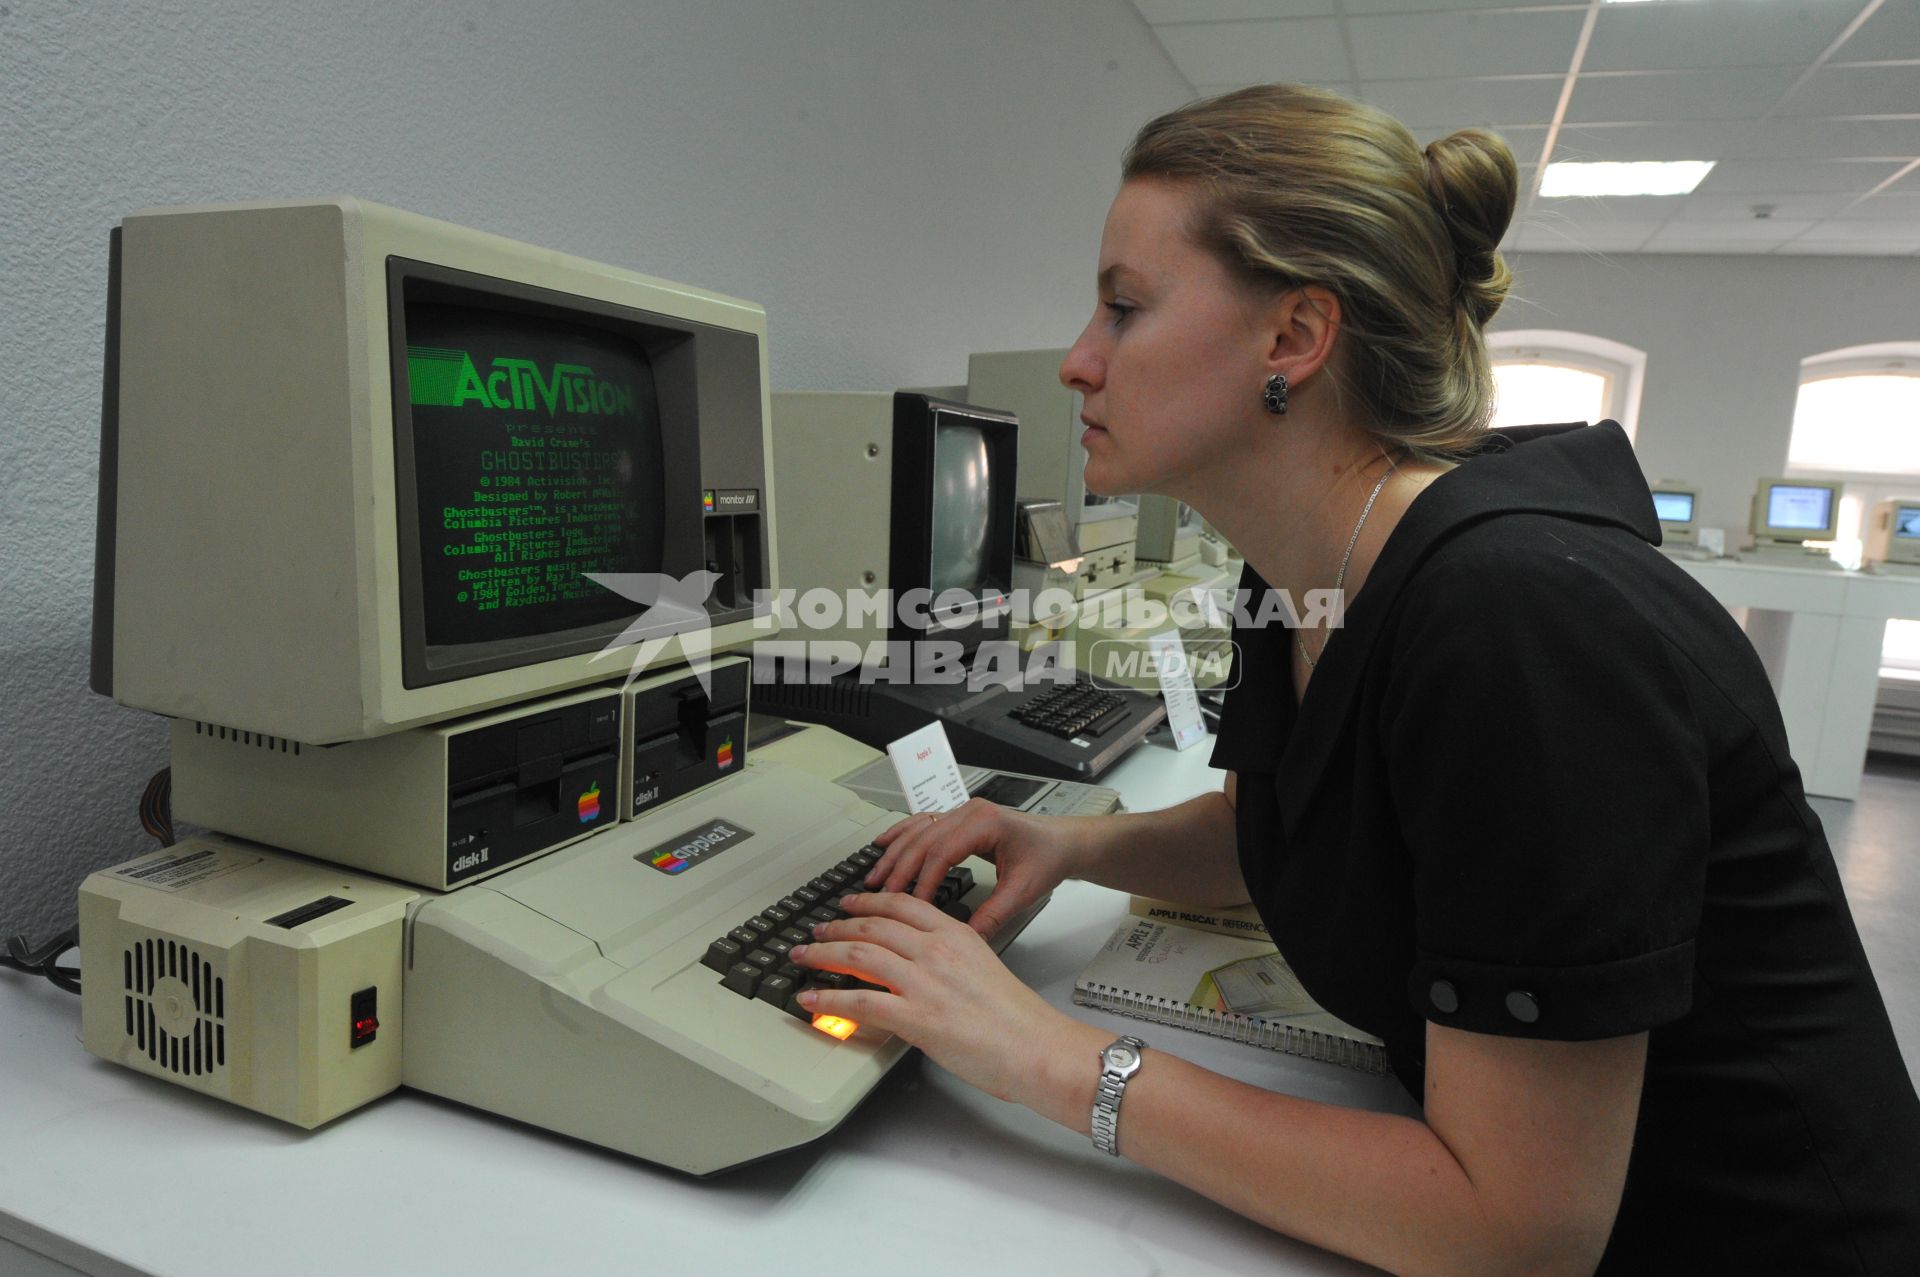 В Москве открылся музей Apple. На снимке: девушка сидит за компьютером Apple II.